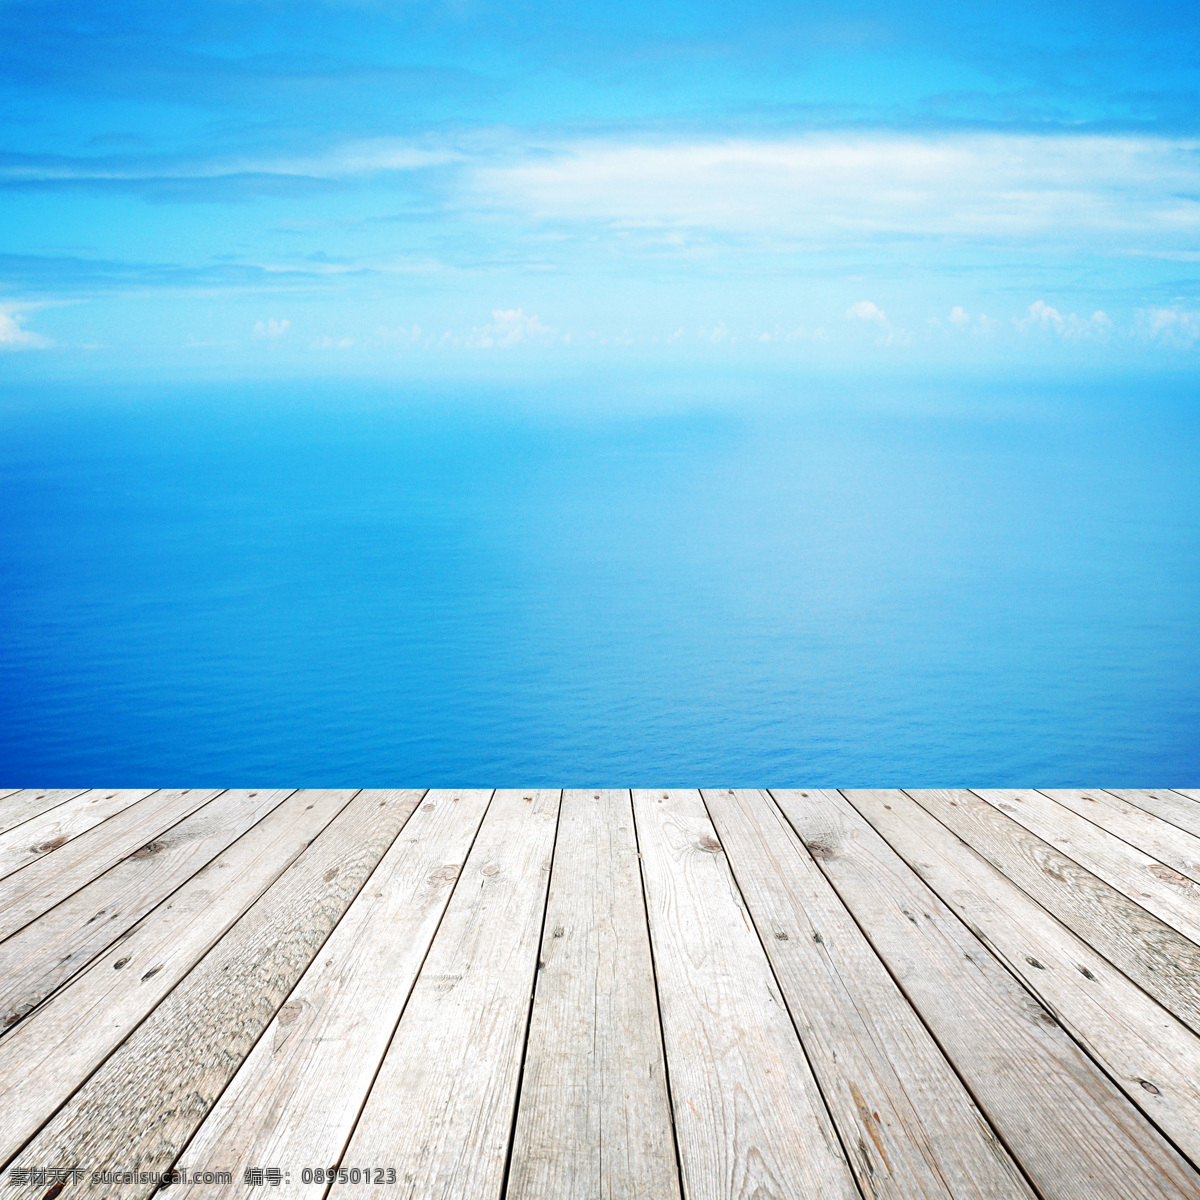 木板 蔚蓝 海洋 木板背景 海岸风景 大海 海洋风景 海平面 美丽风景 风景摄影 美丽风光 自然美景 美丽景色 大海图片 风景图片